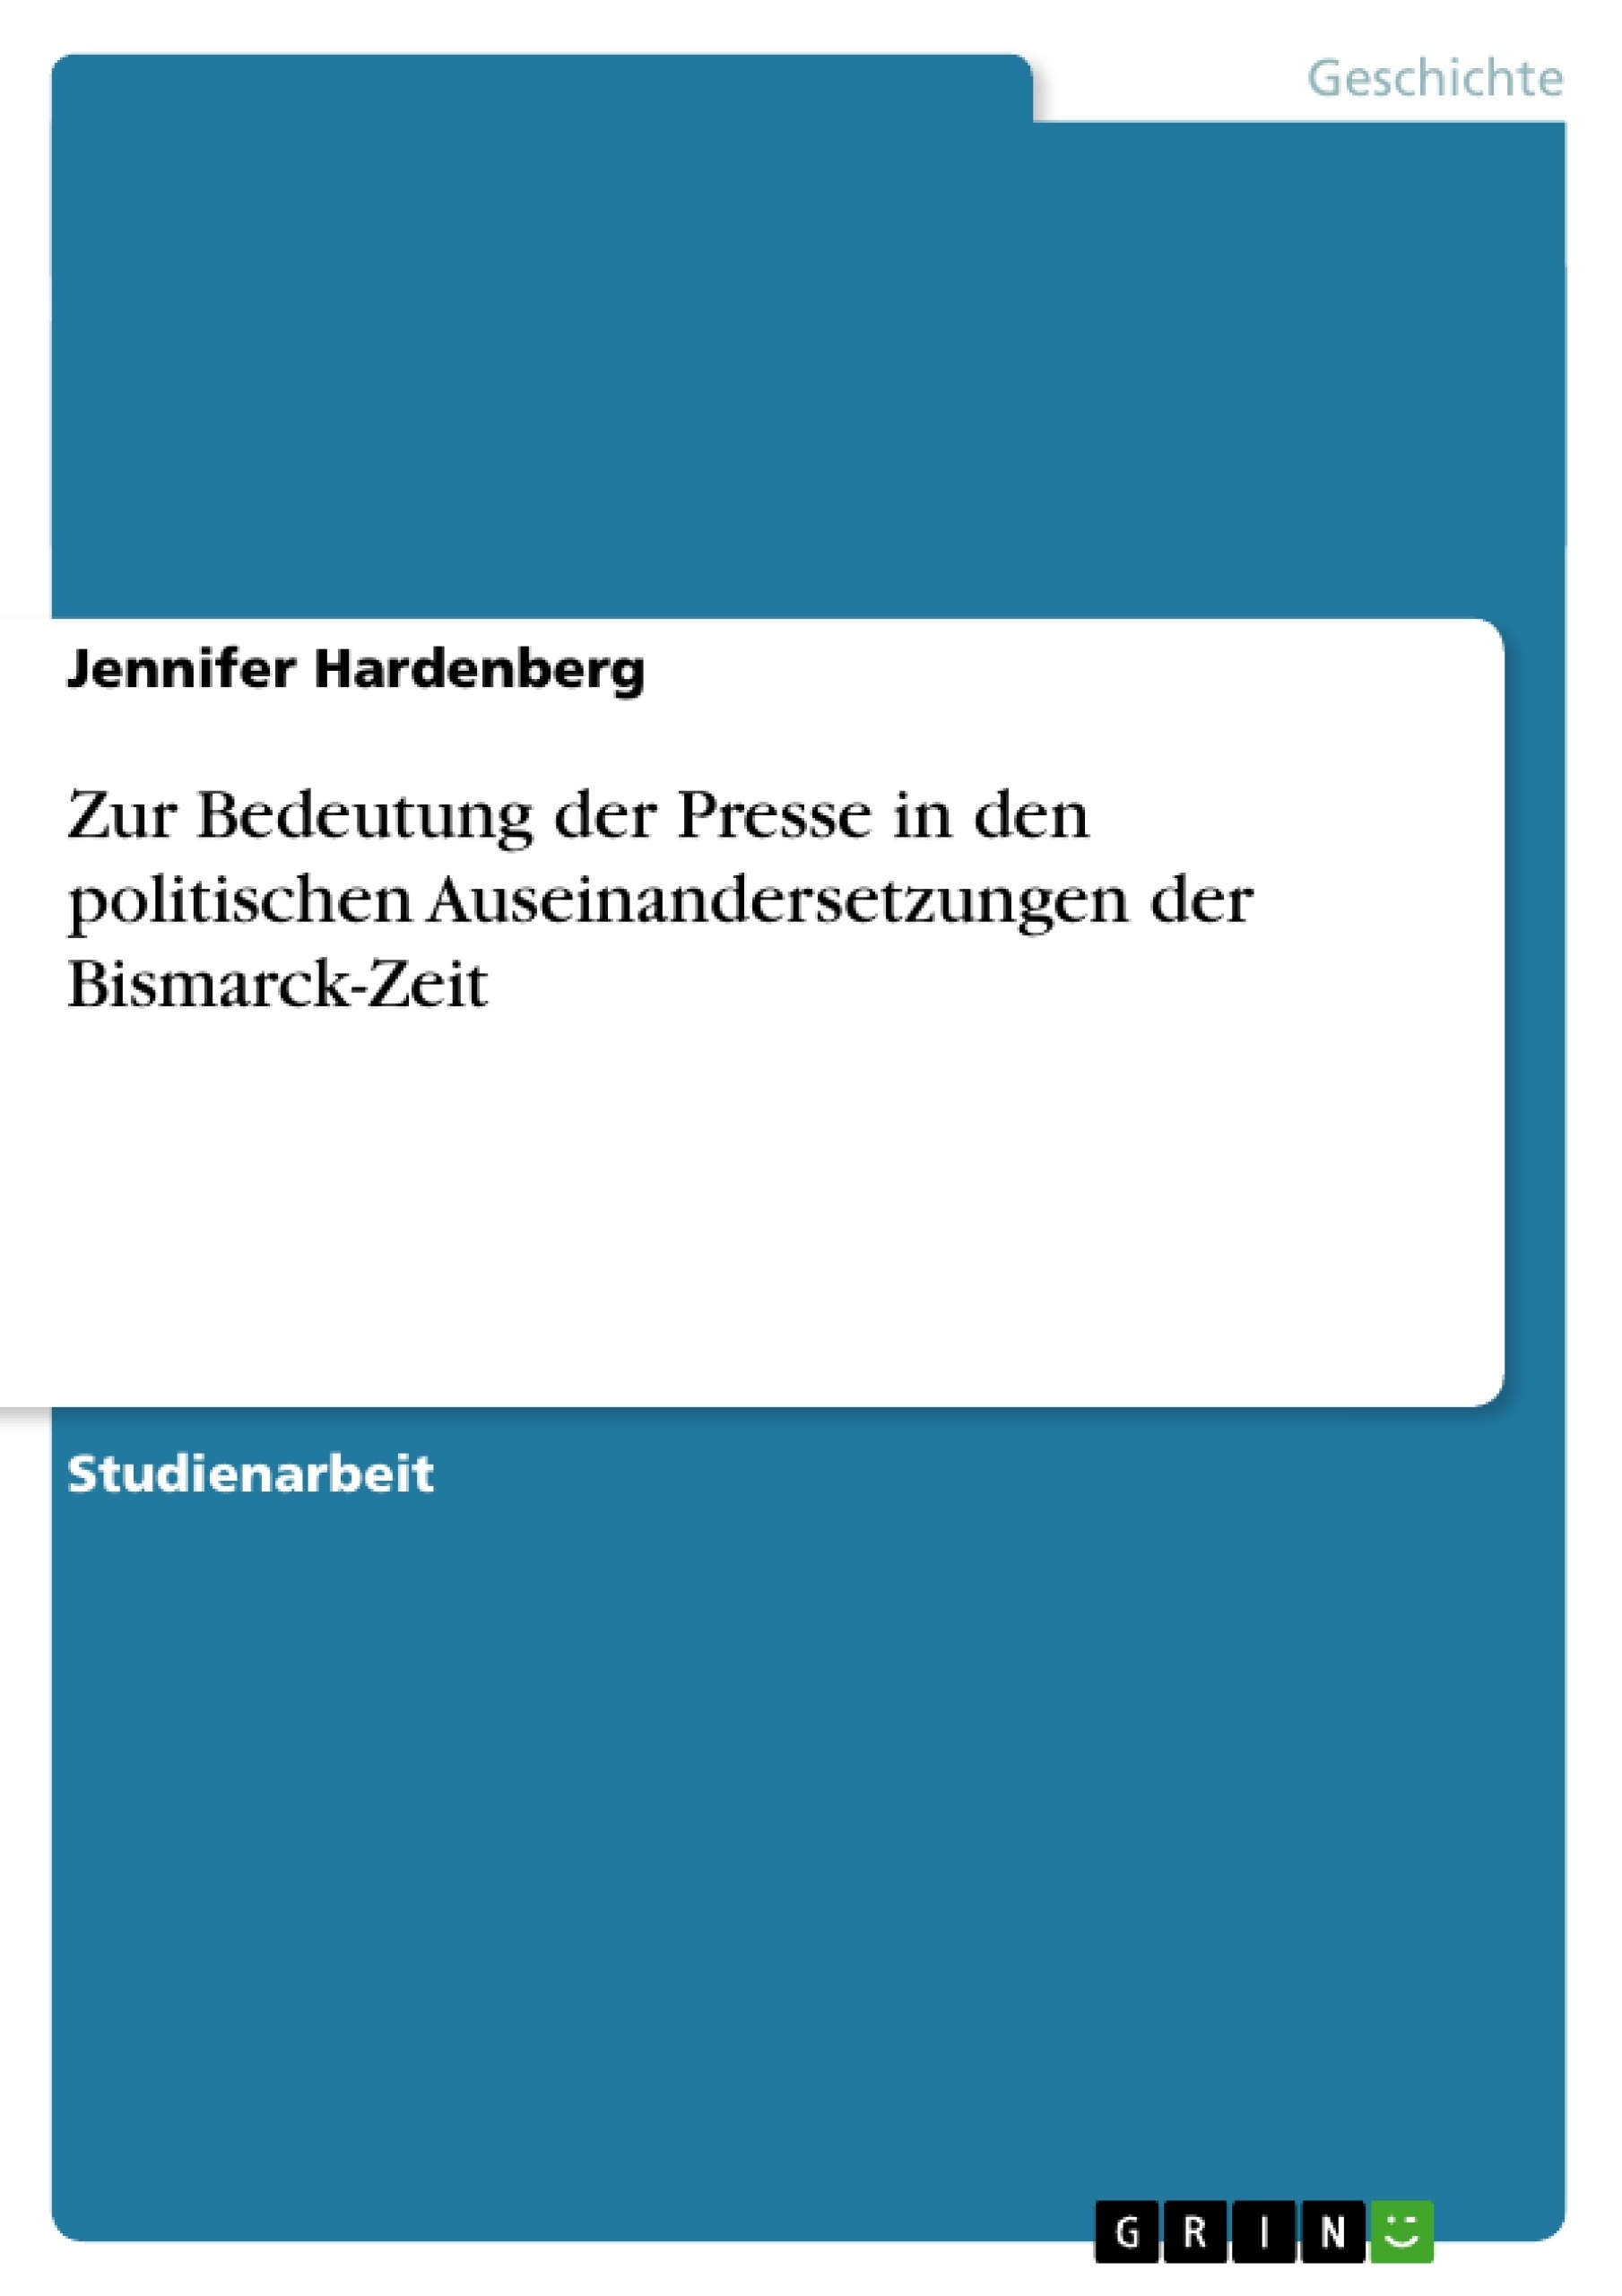 Título: Zur Bedeutung der Presse in den politischen Auseinandersetzungen der Bismarck-Zeit